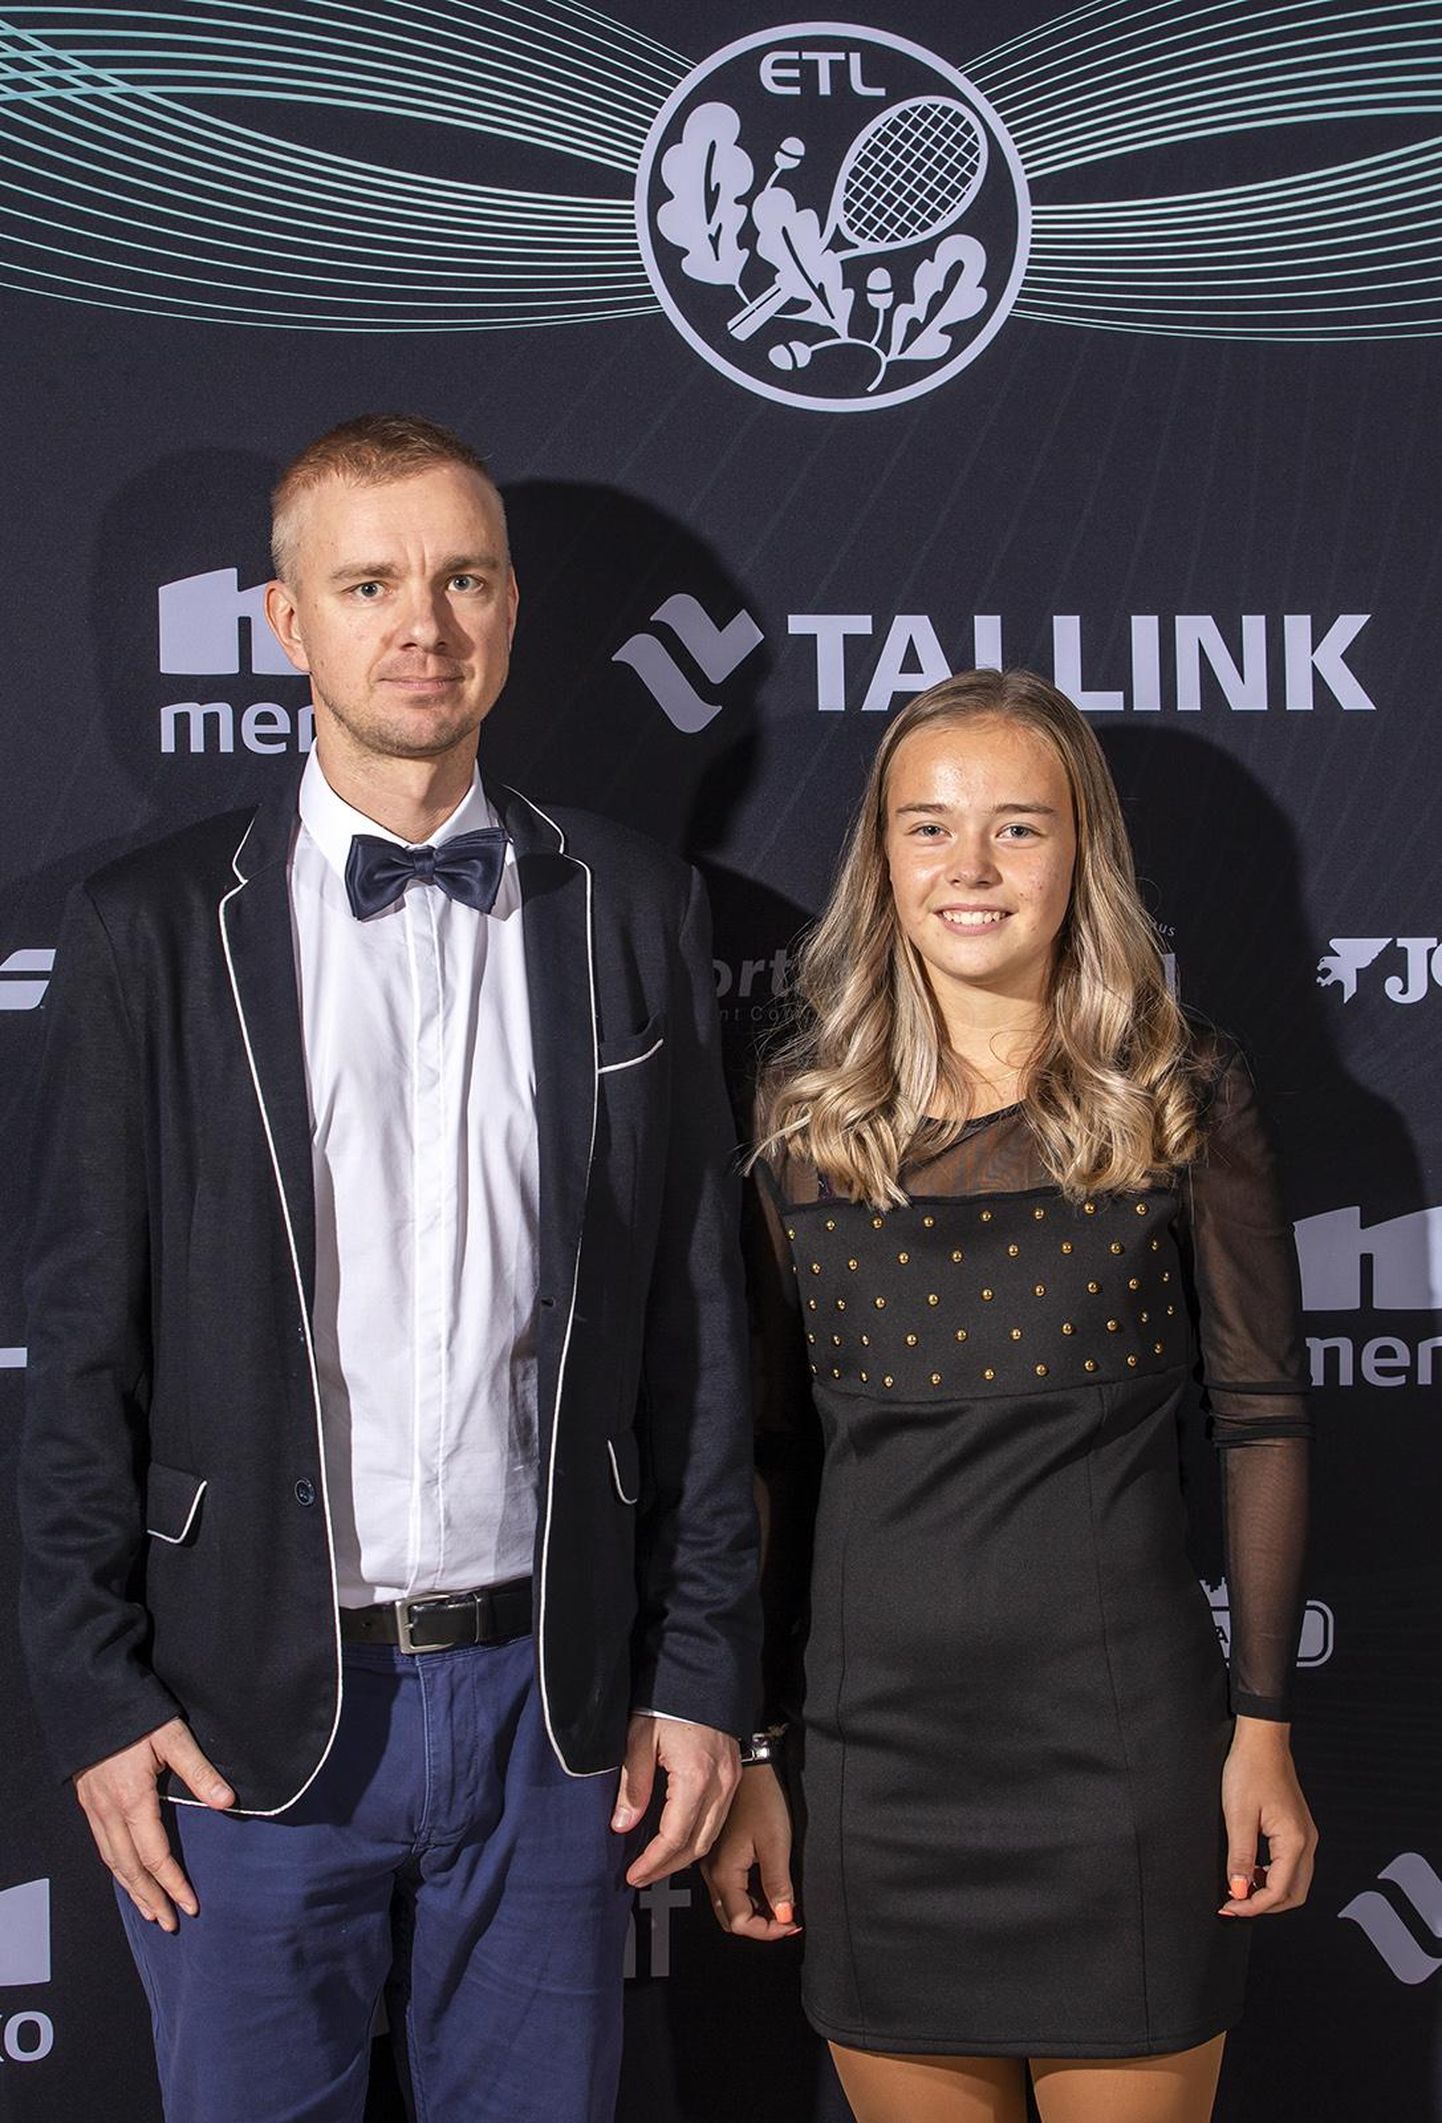 Möödunud nädala reedel valis Eesti tennise liit Viljandi Fellini aasta tenniseklubiks ning selle liikmed Ott Ahoneni ja Brit Martini oma arvestuses aasta tennisistiks.